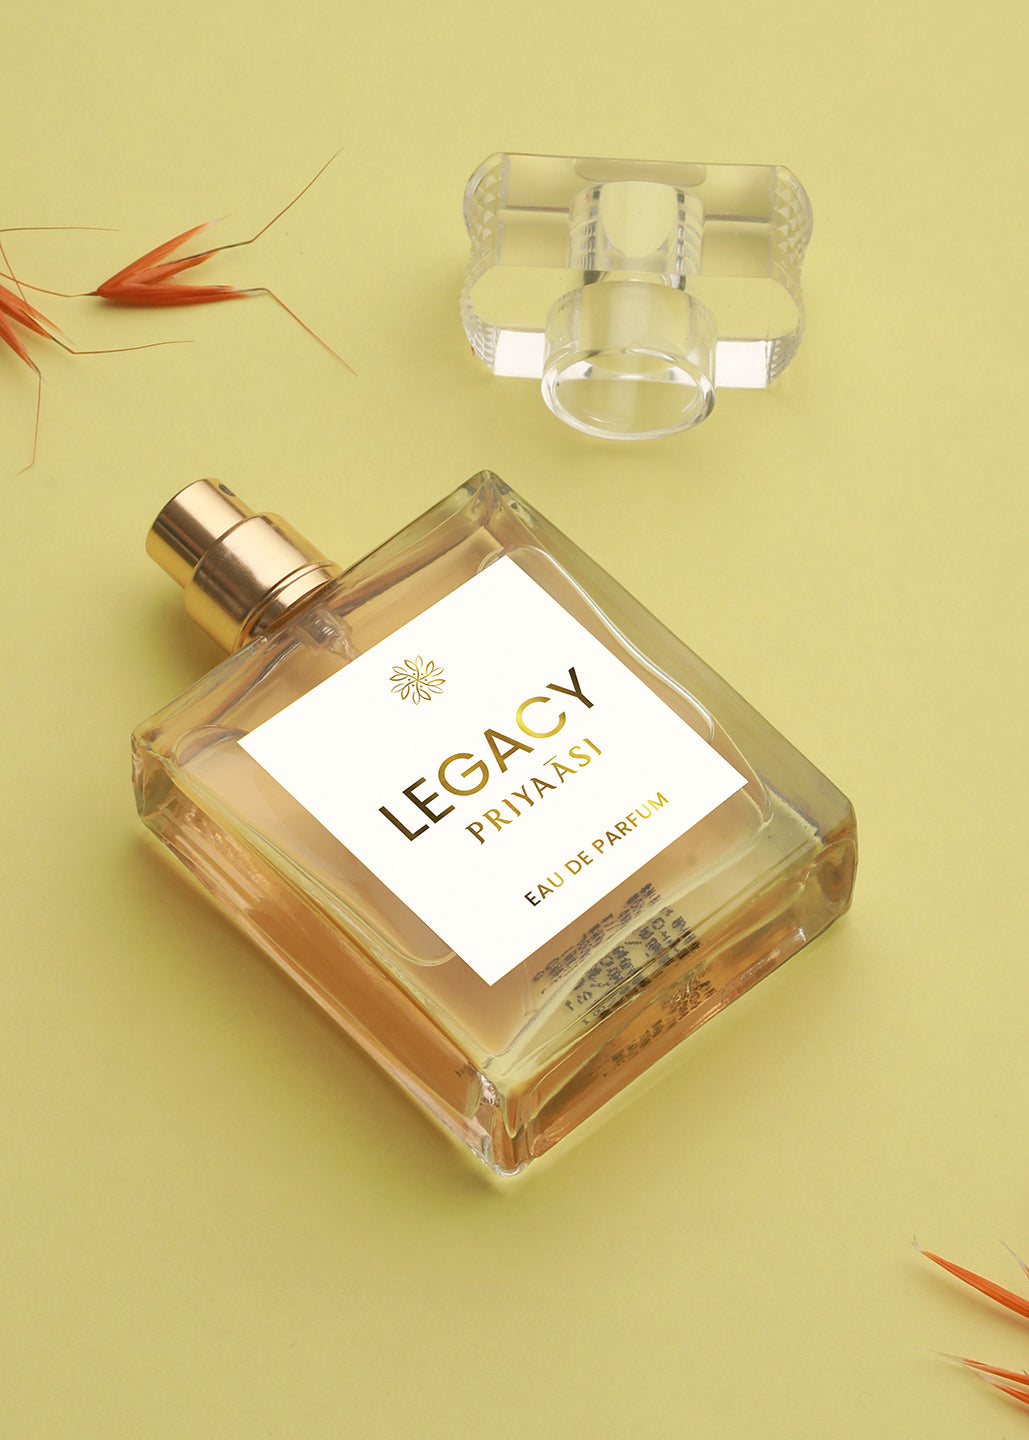 Legacy Women Eau De Parfum, 50 ml